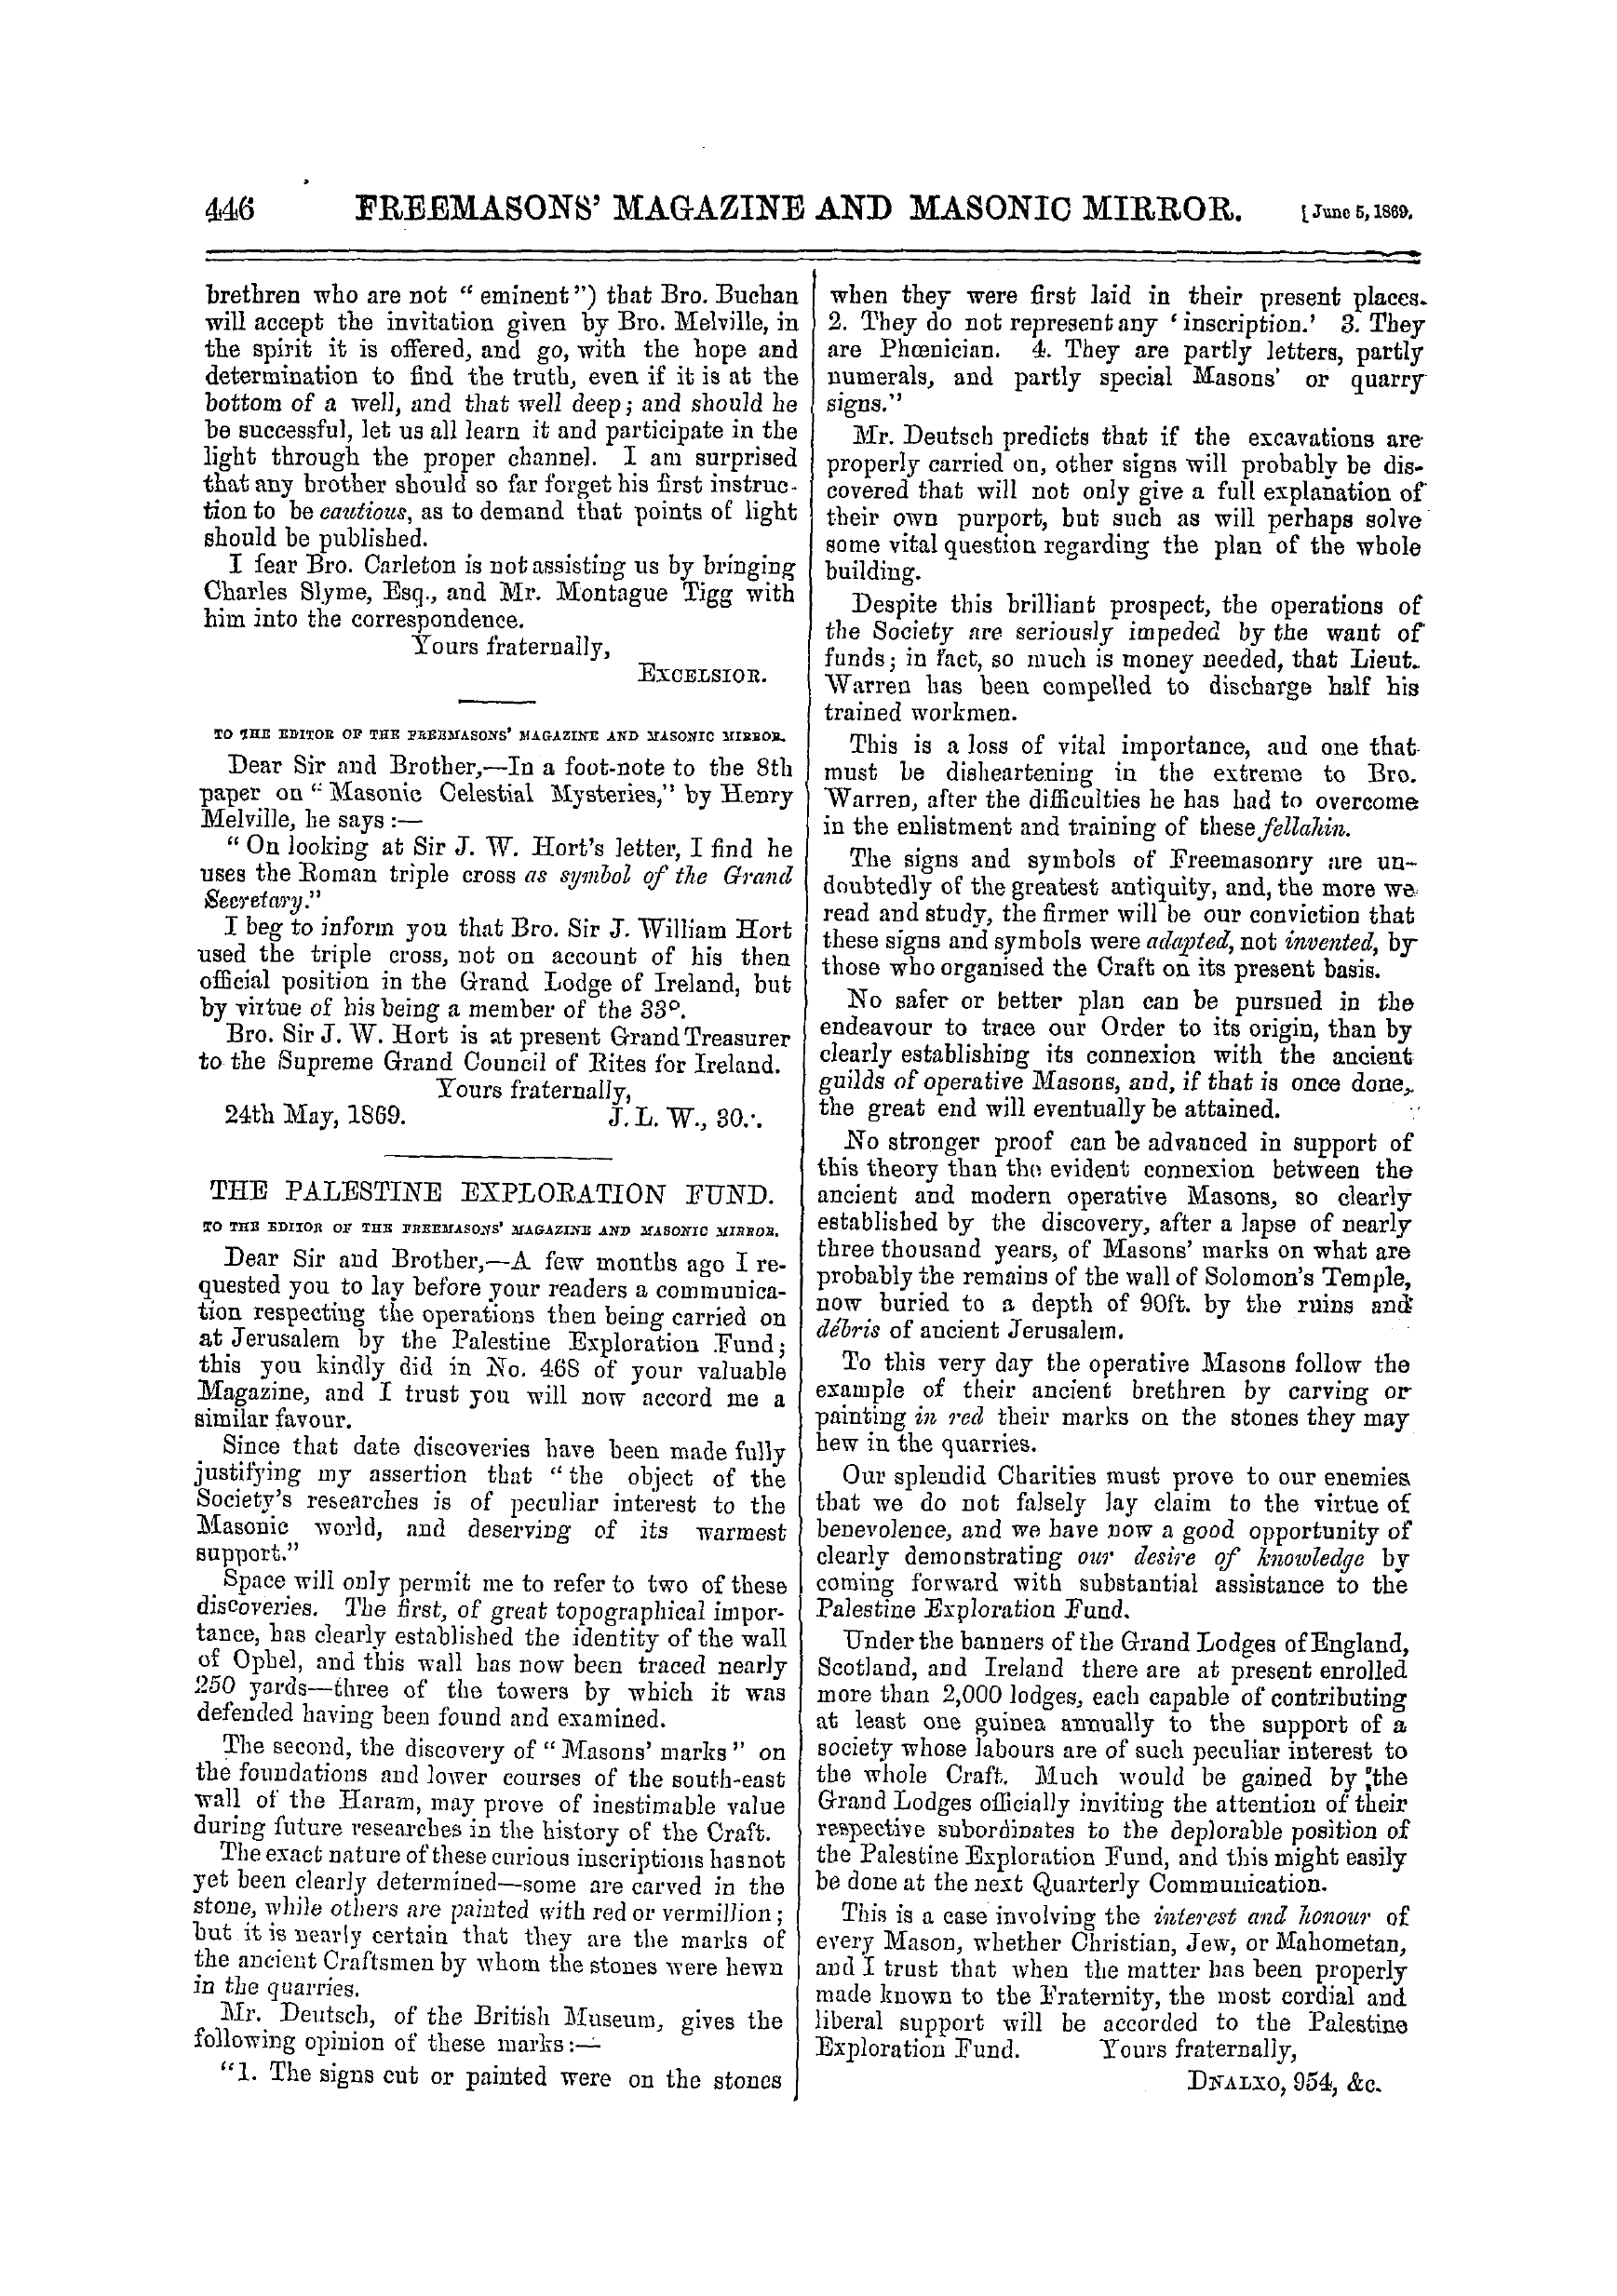 The Freemasons' Monthly Magazine: 1869-06-05: 6